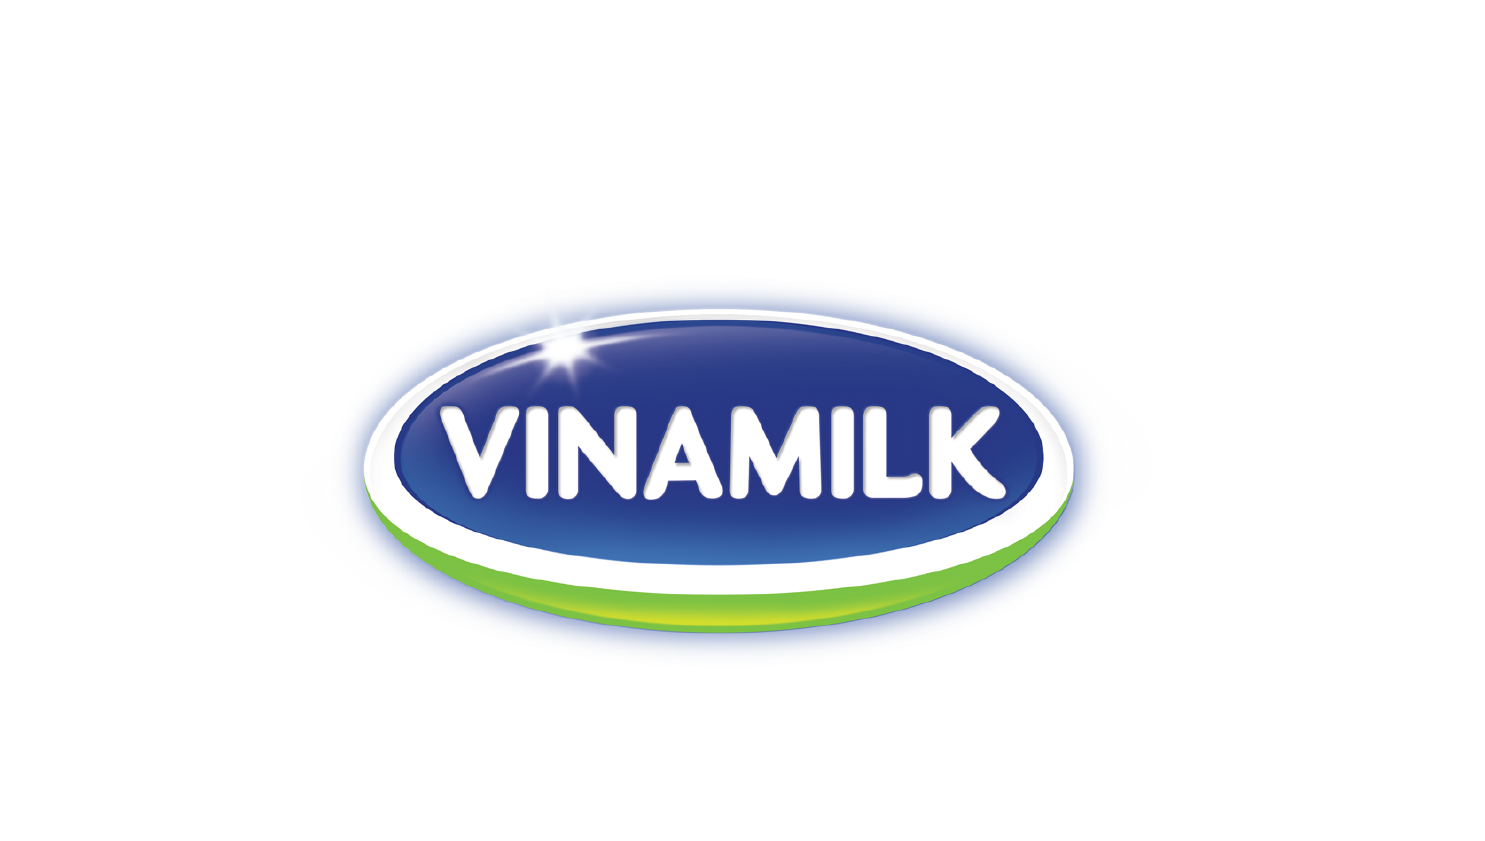 Vinamilk Logo PNG-PlusPNG.com